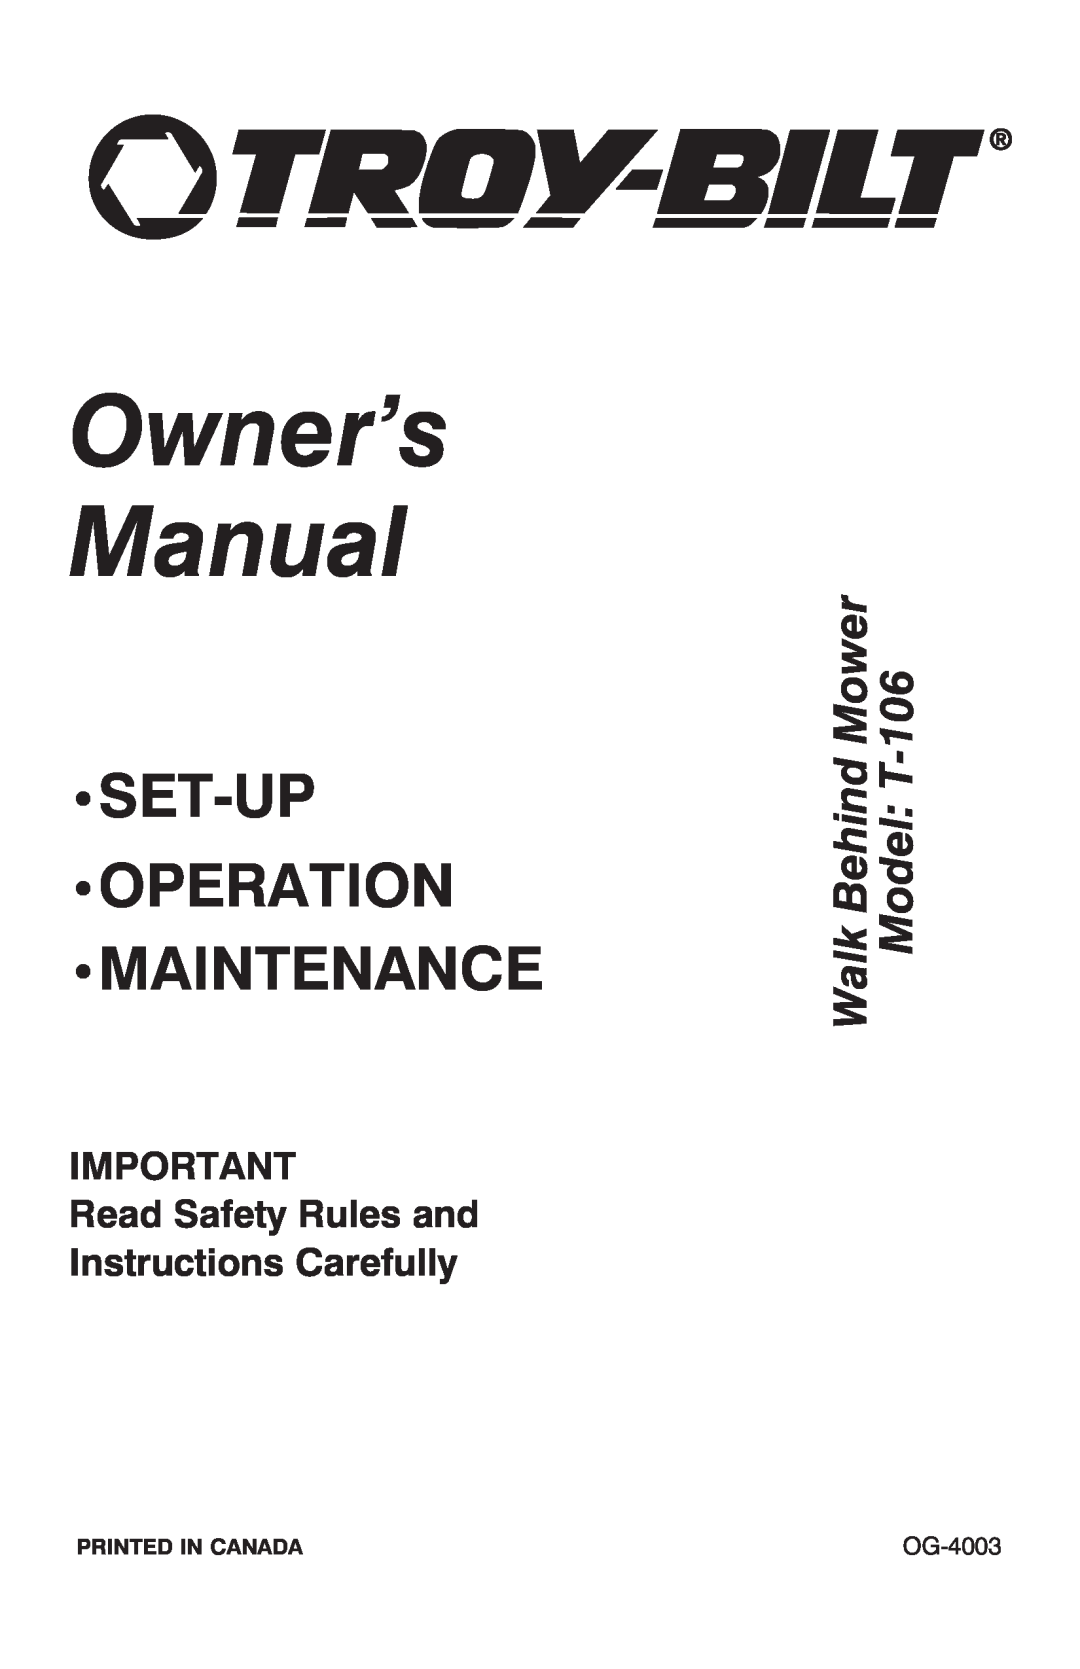 Troy-Bilt T-106 owner manual Printed In Canada, OG-4003, Owner’s Manual, Set-Up Operation Maintenance 